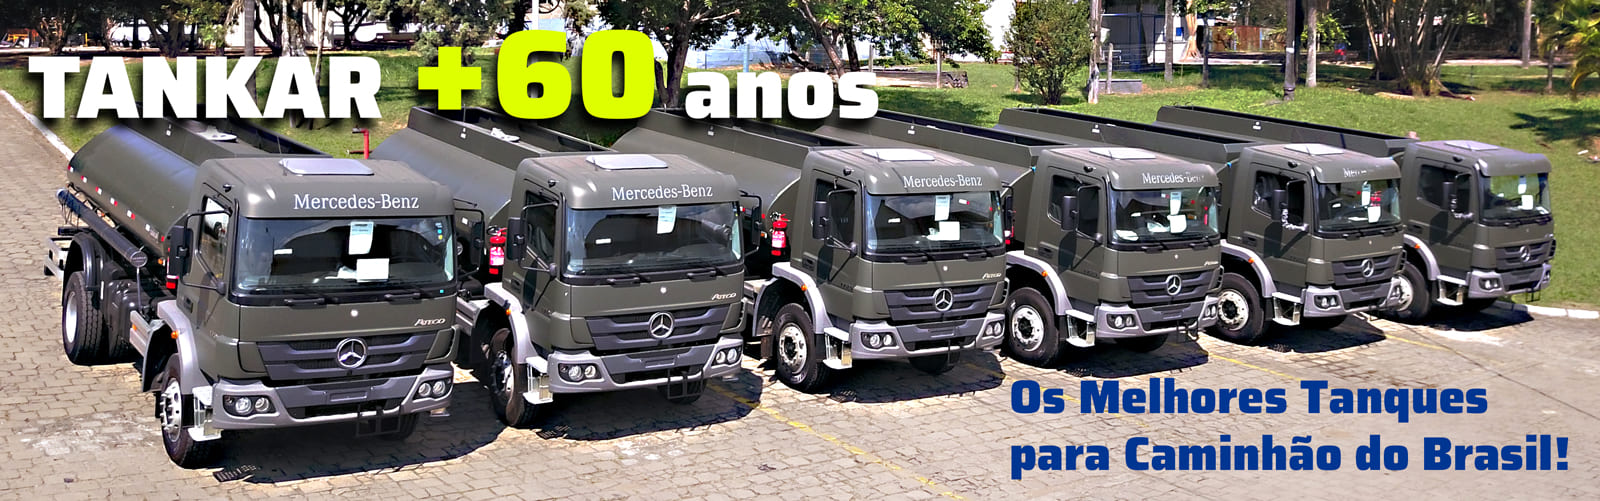 Tankar +60 anos: Os Melhores Tanques para Caminhão do Brasil!